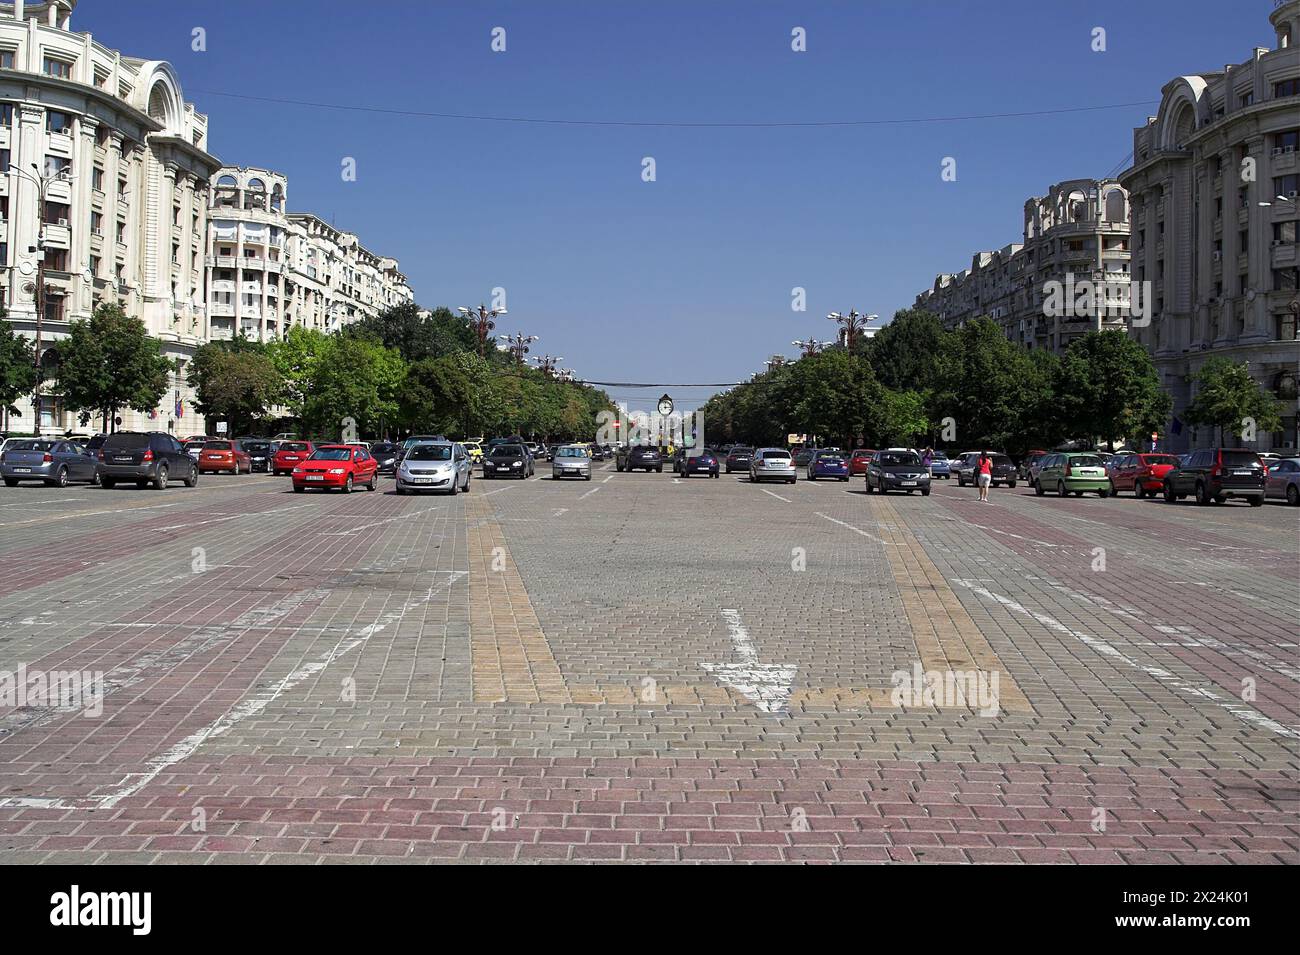 București, Bucharest, Rumänien, Romania; Bulevardul Unirii Stock Photo